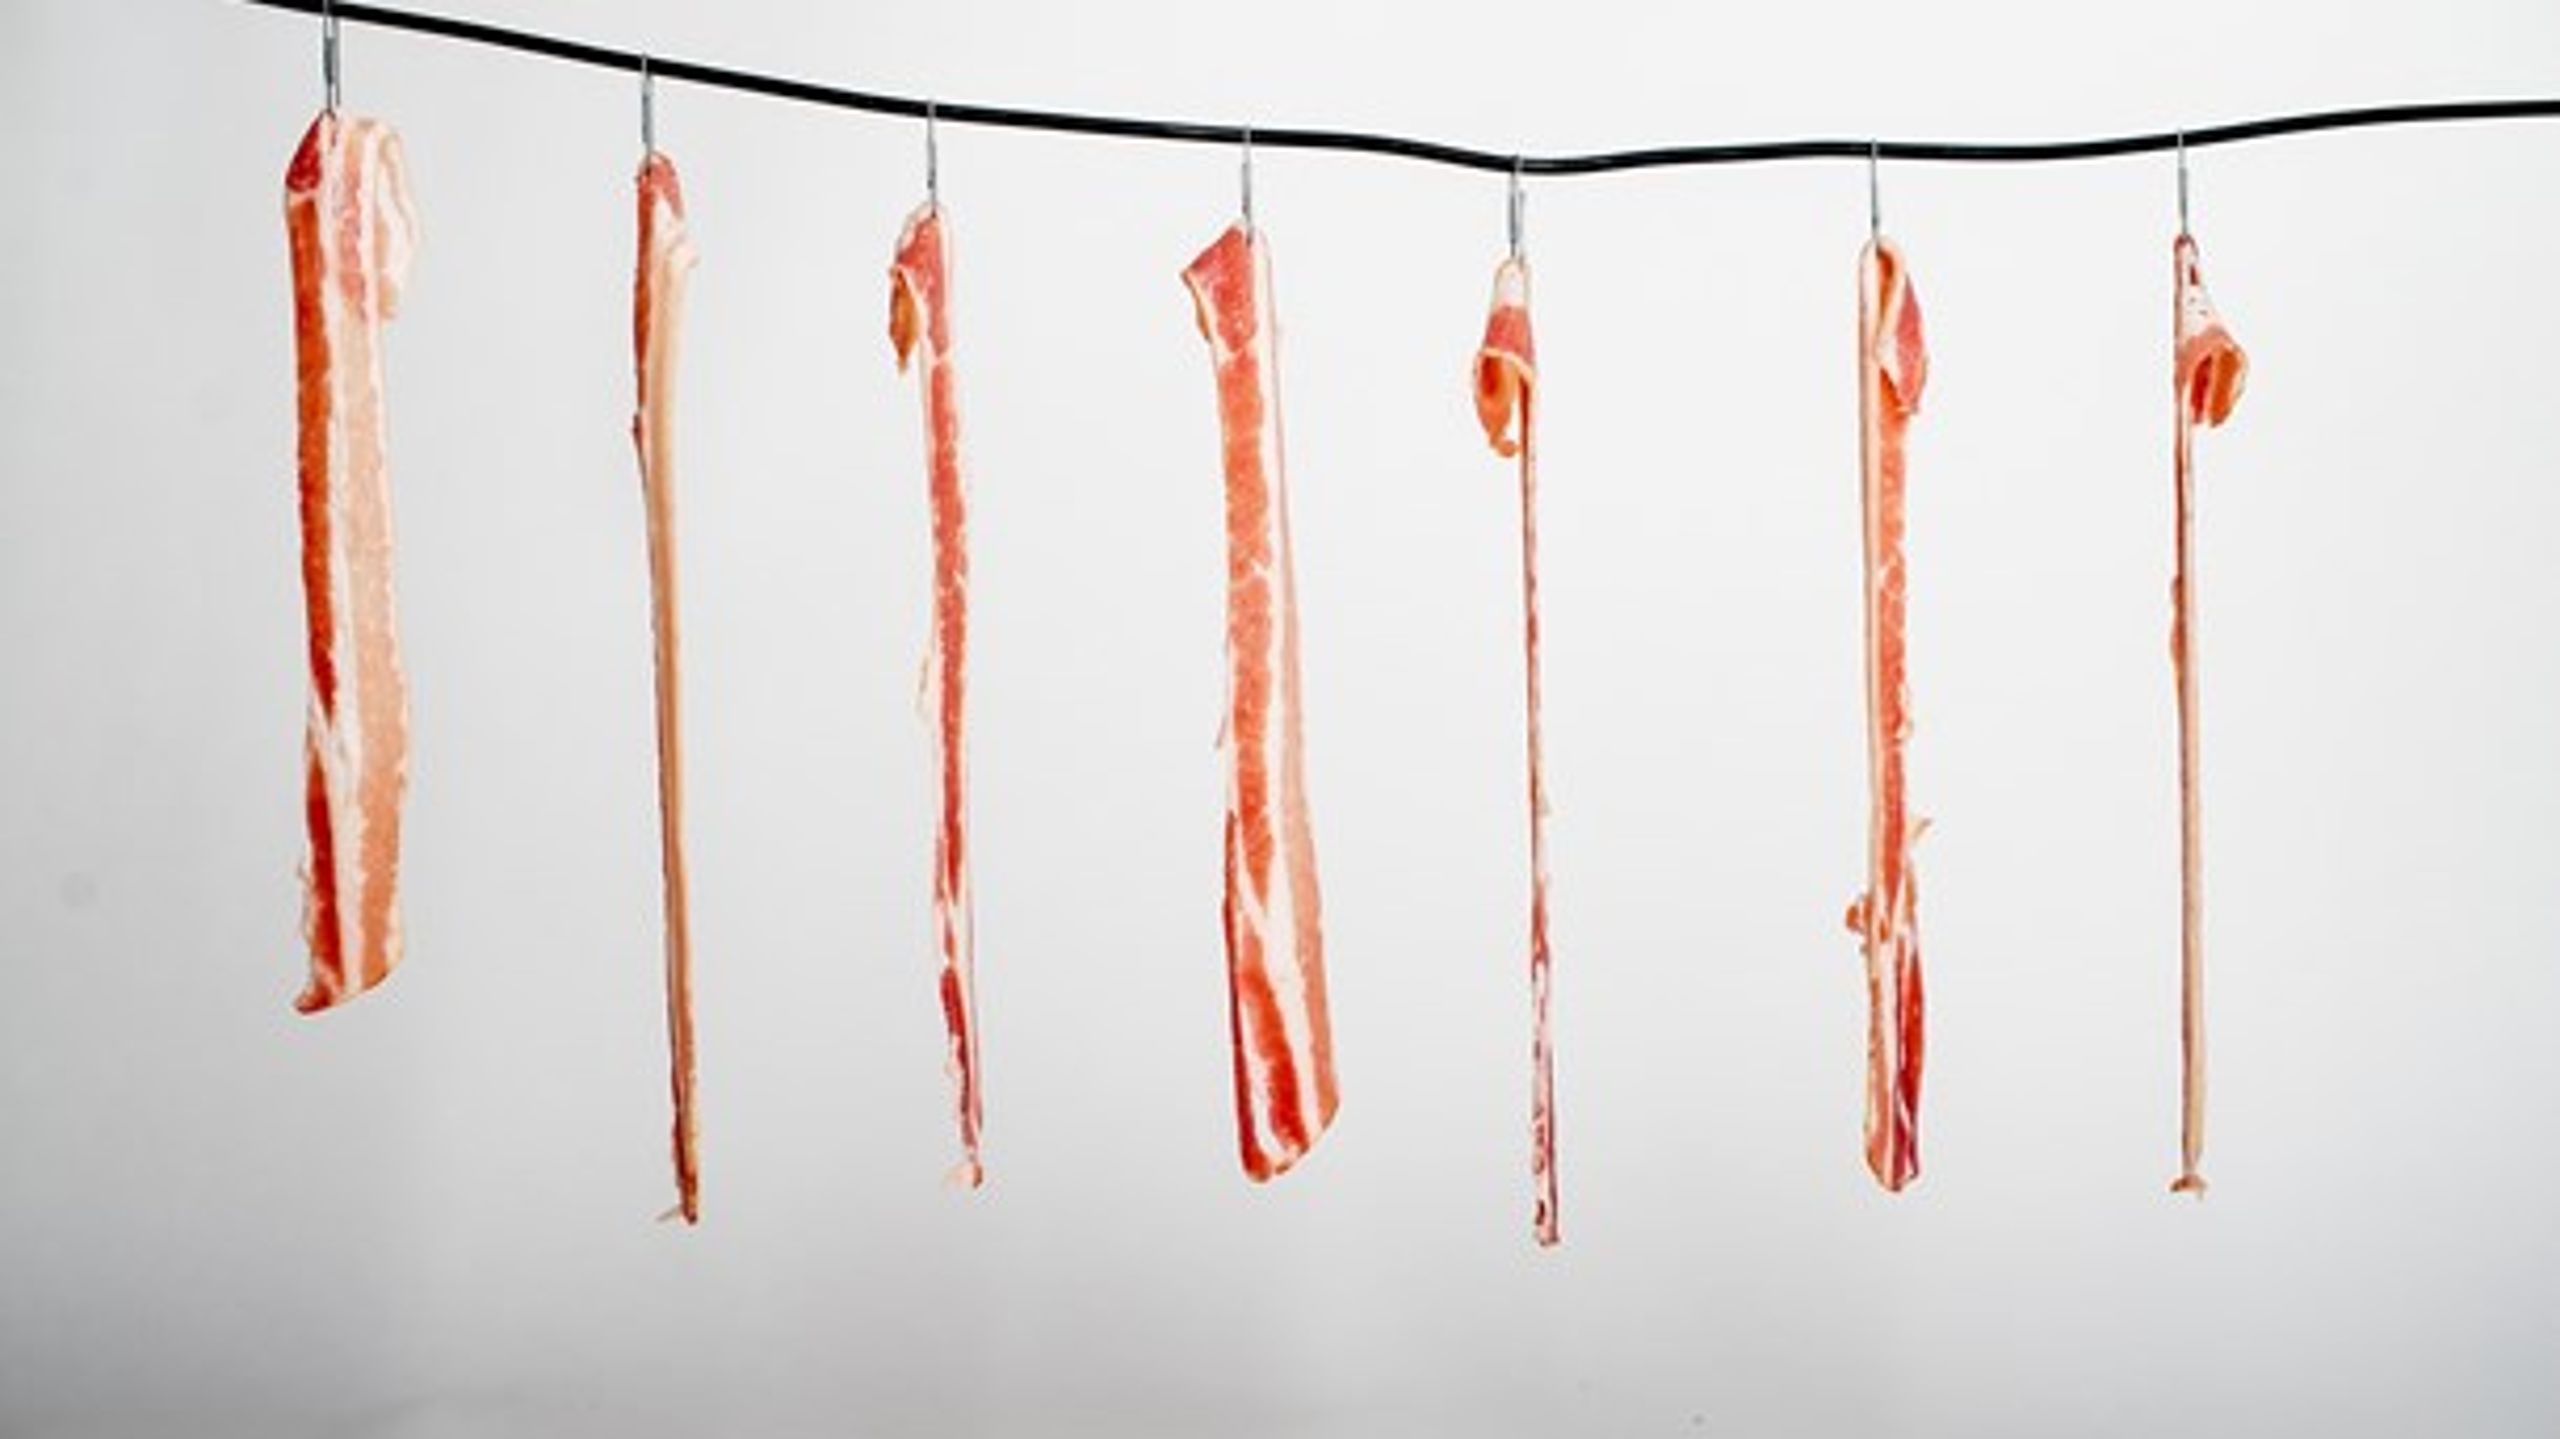 Eksport af blød magt, som for eksempel&nbsp;kultur, kunne blive større end bacon, skriver Line Rosenvinge.